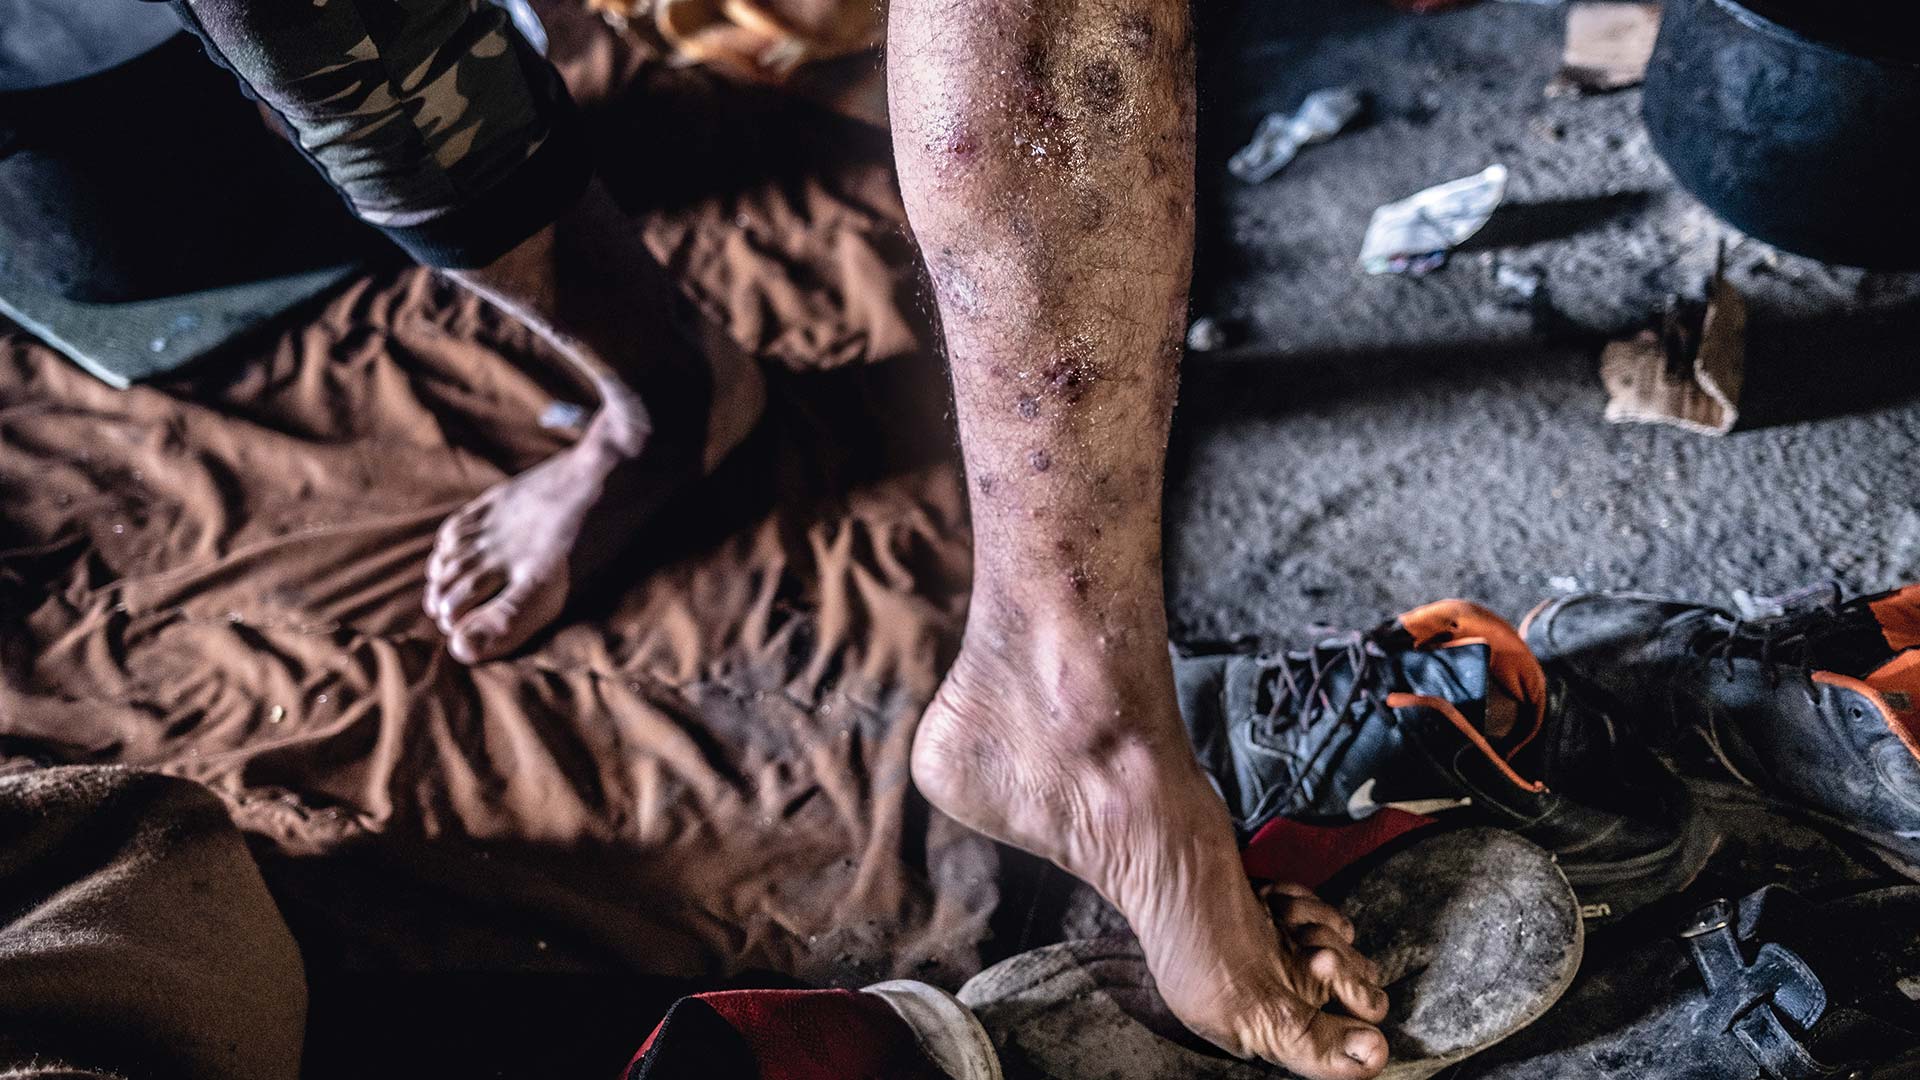 Spuren der Gewalt: Ein Geflüchteter zeigt sein Bein, nachdem er von kroatischen Grenzpolizisten gefasst, verletzt und nach Bosnien zurückgeschickt wurde. 